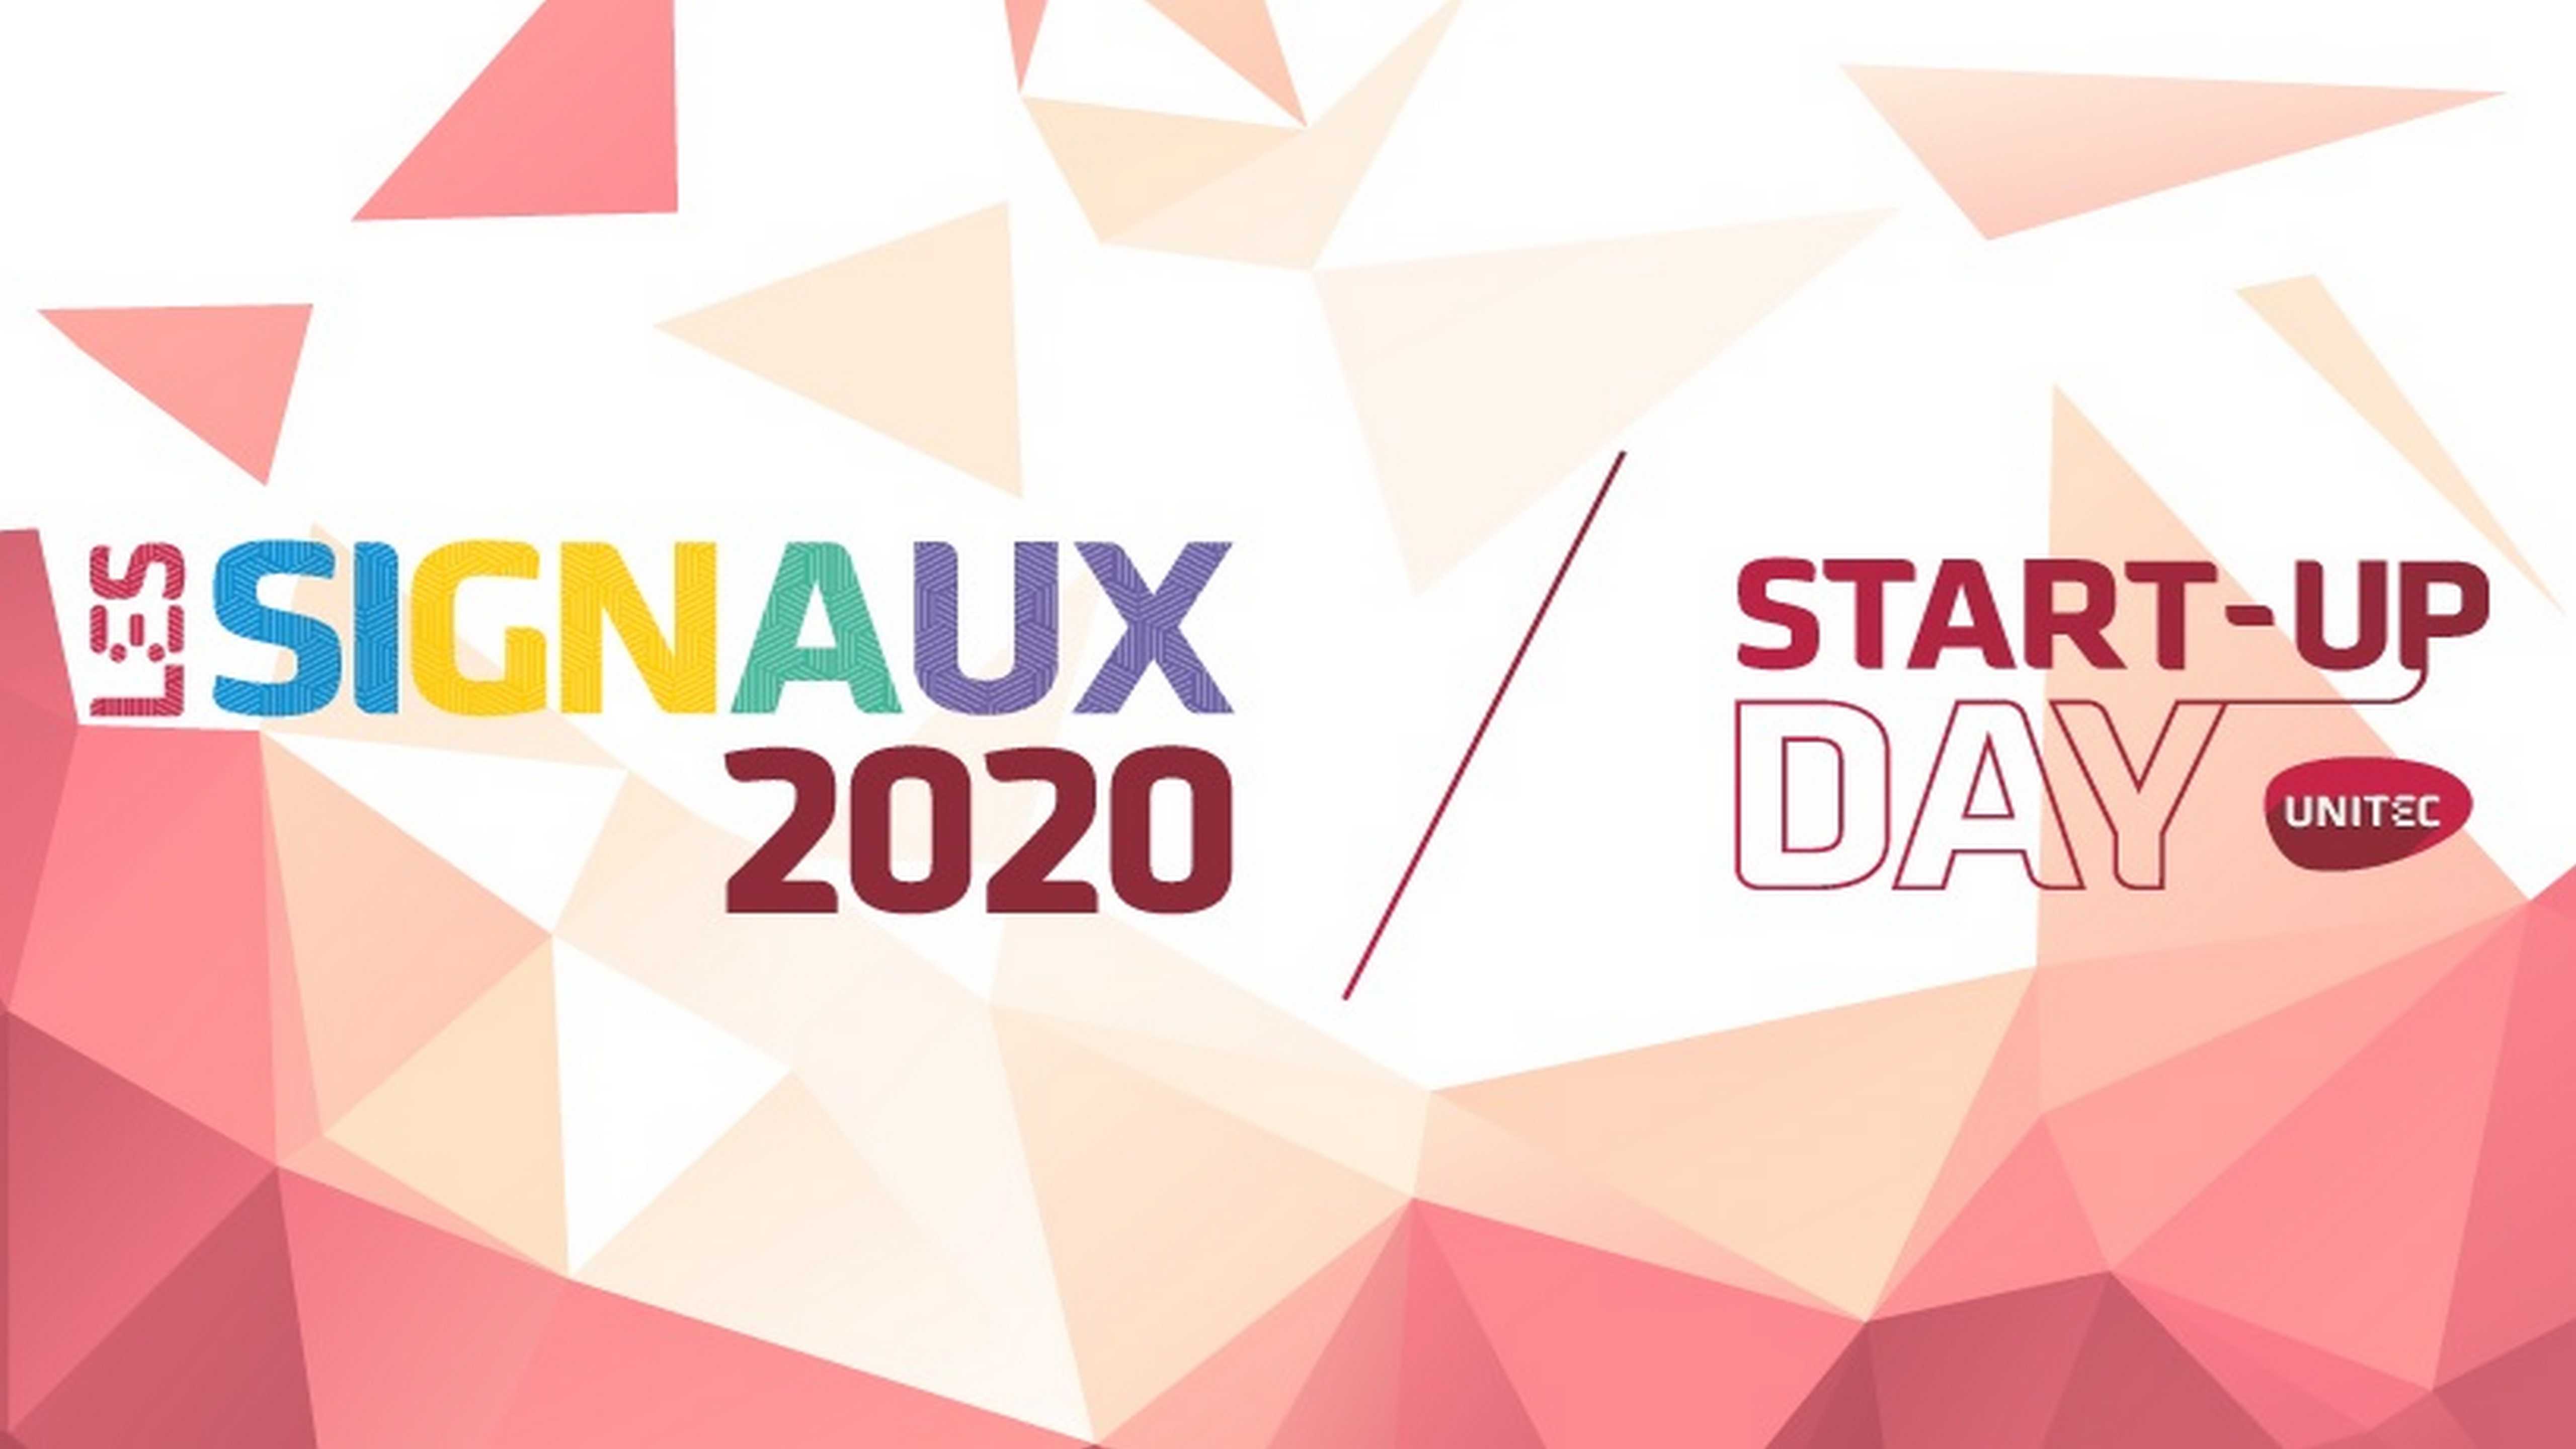 Unitec propose un événement 100% en ligne à l'occasion des "Signaux 2020" et de son start-up day annuel